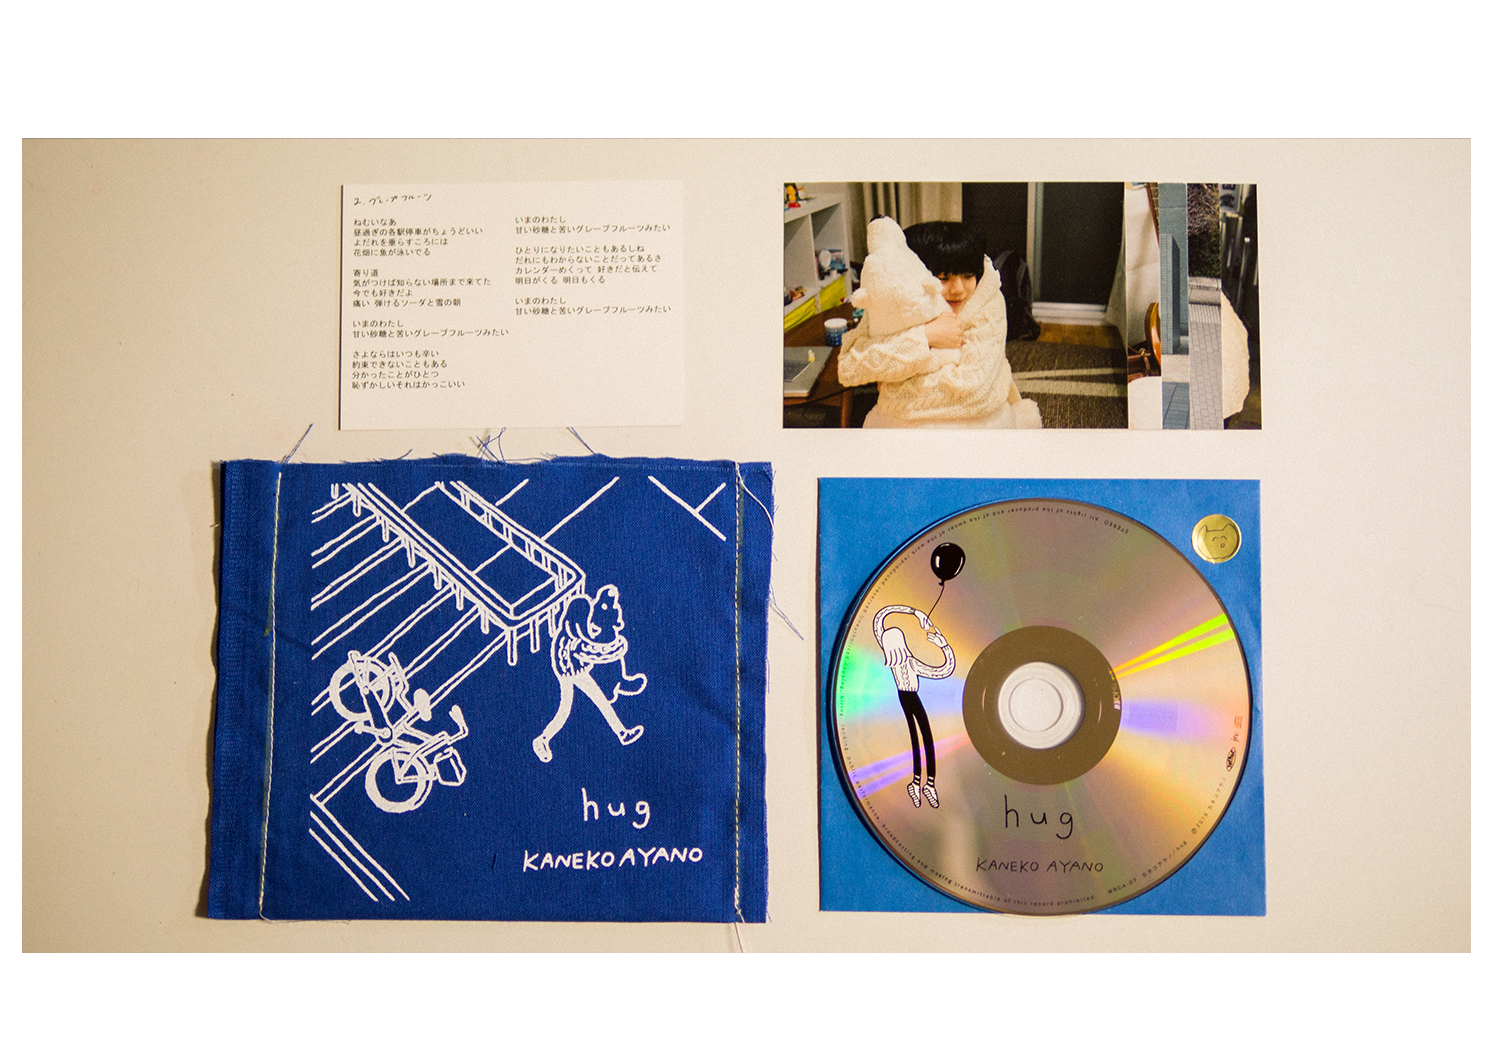 カネコアヤノ、キャリア初となる弾き語りCD『hug』発売。6月12日には